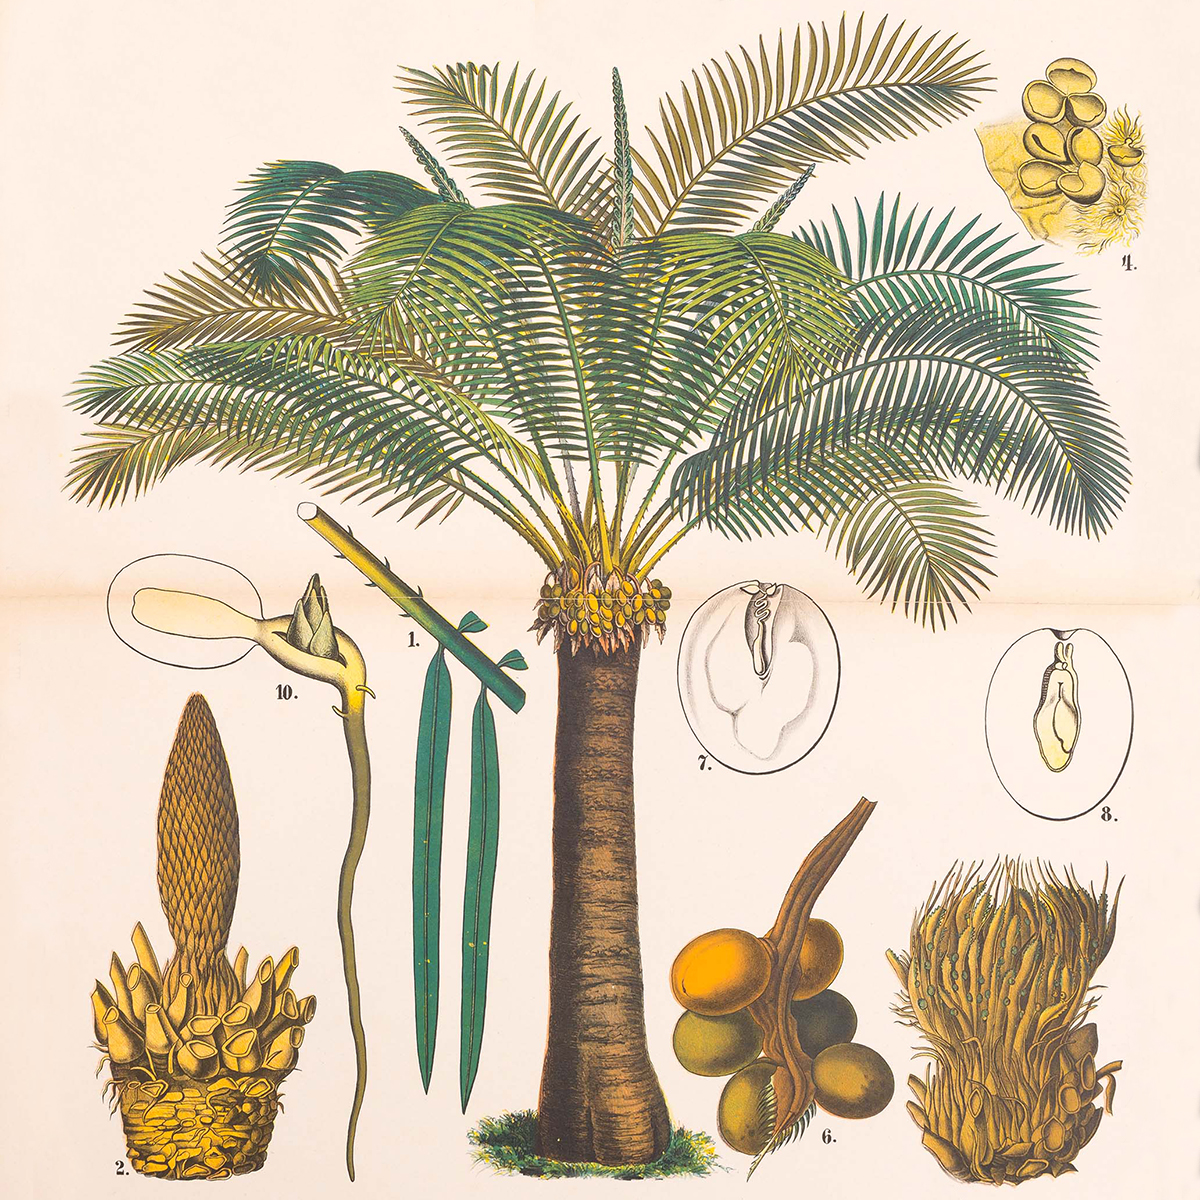 Sago palm from Ausländische Culturpflanzen in Farbigen Wandtafeln mit Ertläuterndem